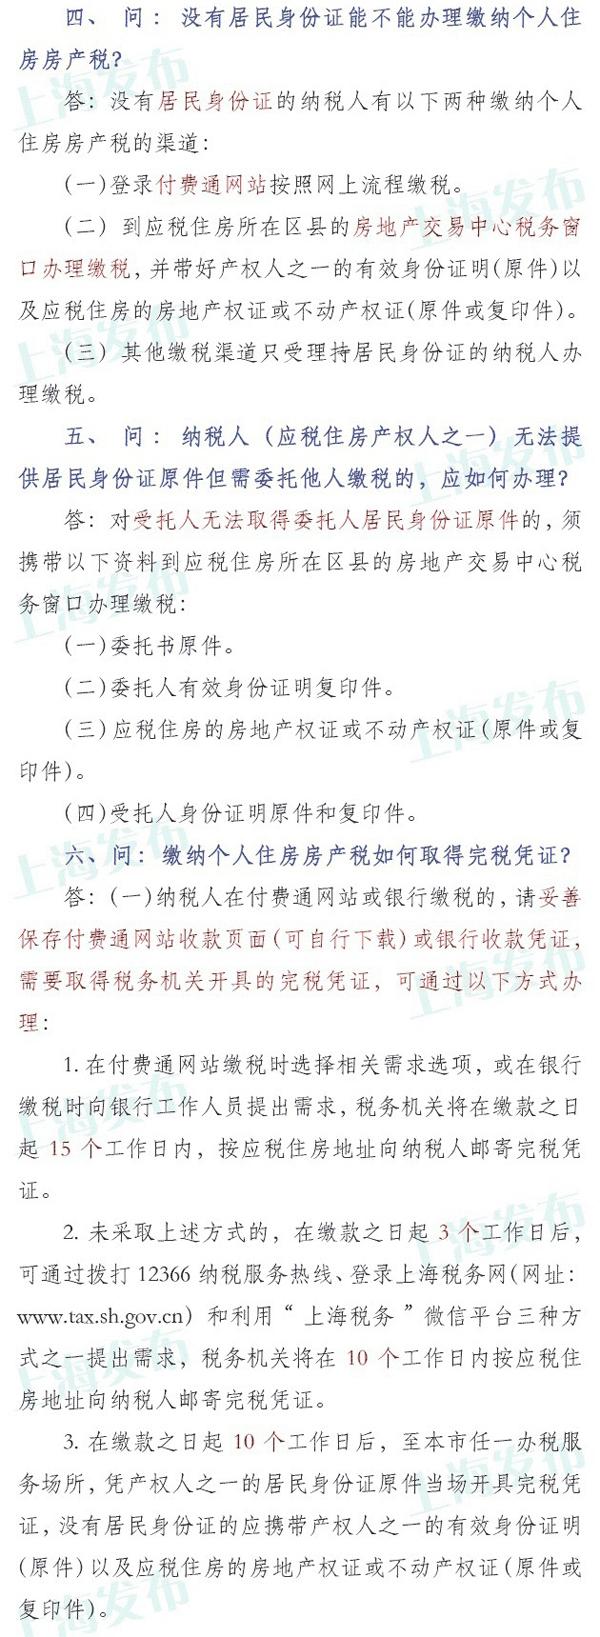 上海税务:请于年底前缴纳个人房产税,6种情况